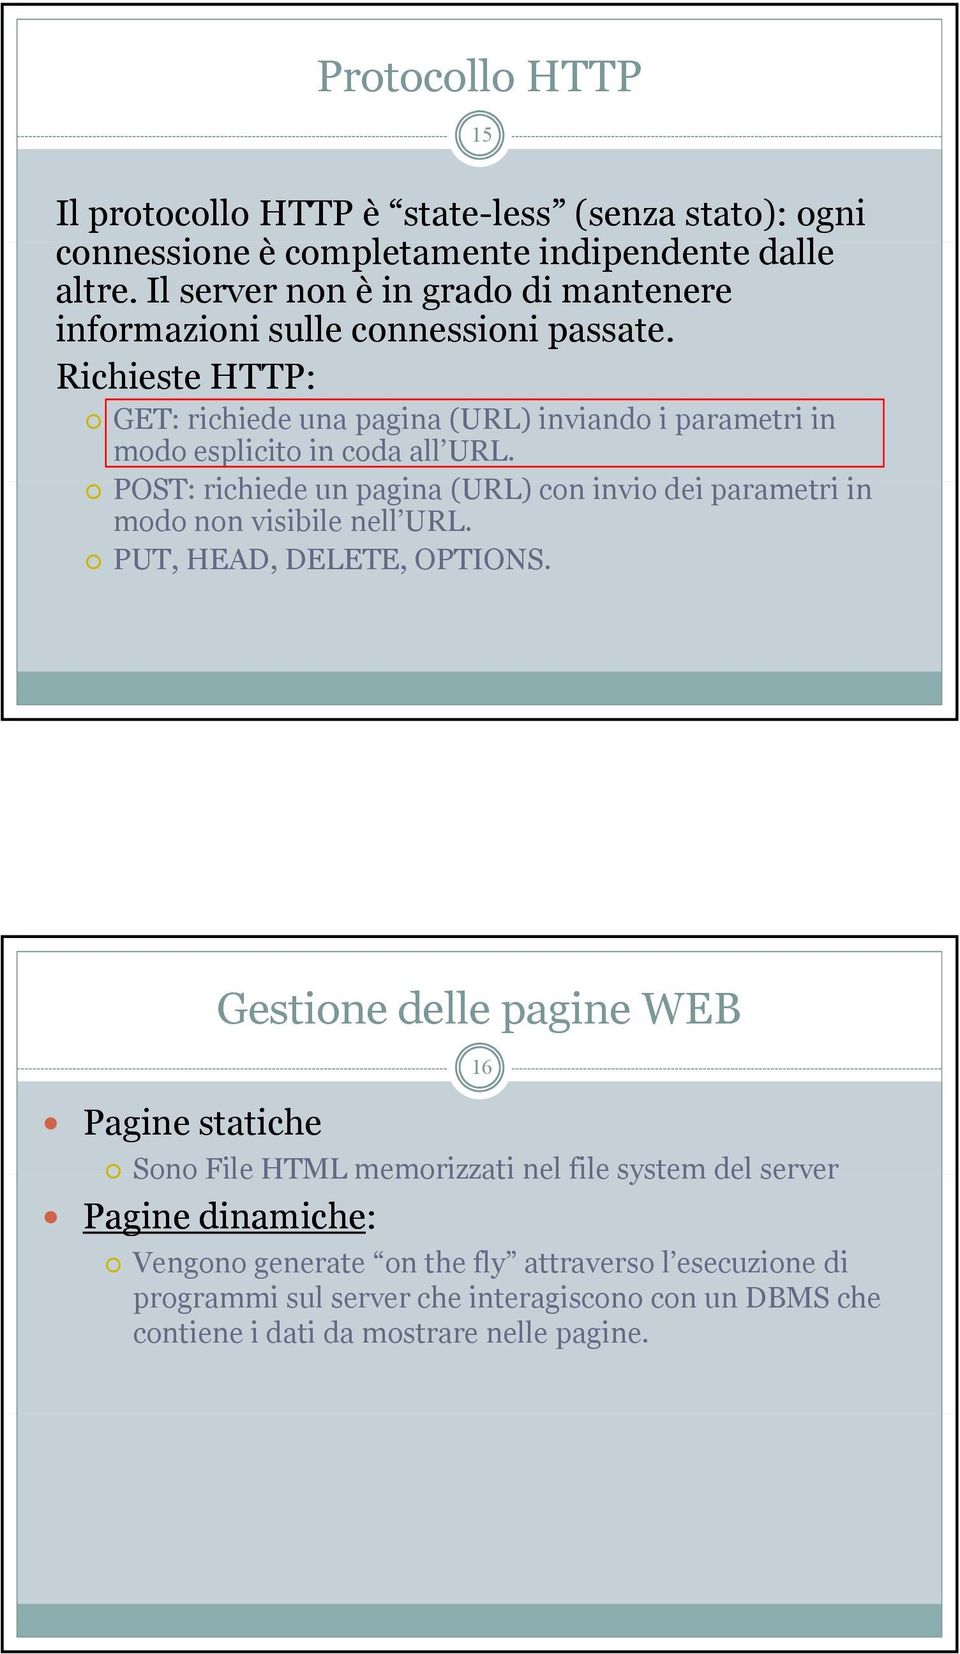 Richieste HTTP: GET: richiede una pagina (URL) inviando i parametri in modo esplicito in coda all URL.